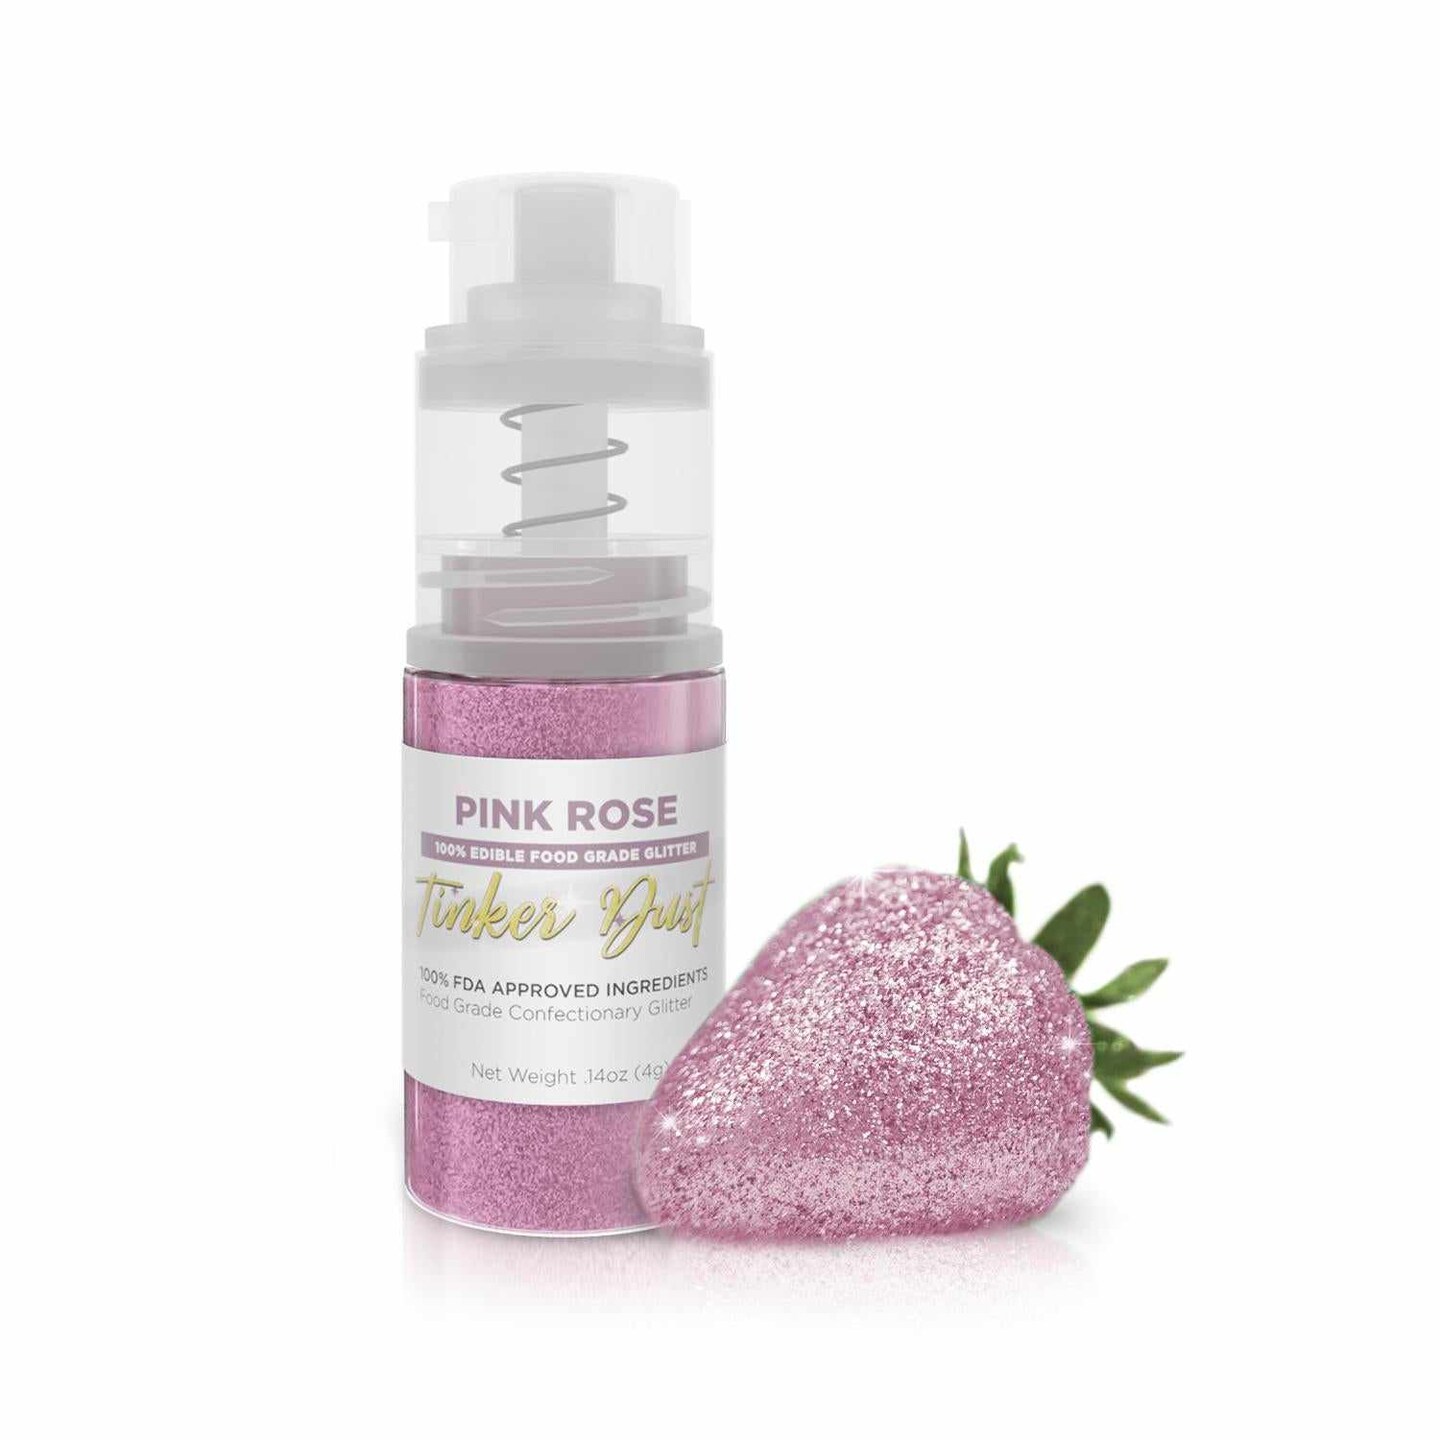 BAKELL Soft Pink Edible Glitter, 5 Gram, TINKER DUST Edible Glitter, KOSHER Certified, 100% Edible Glitter